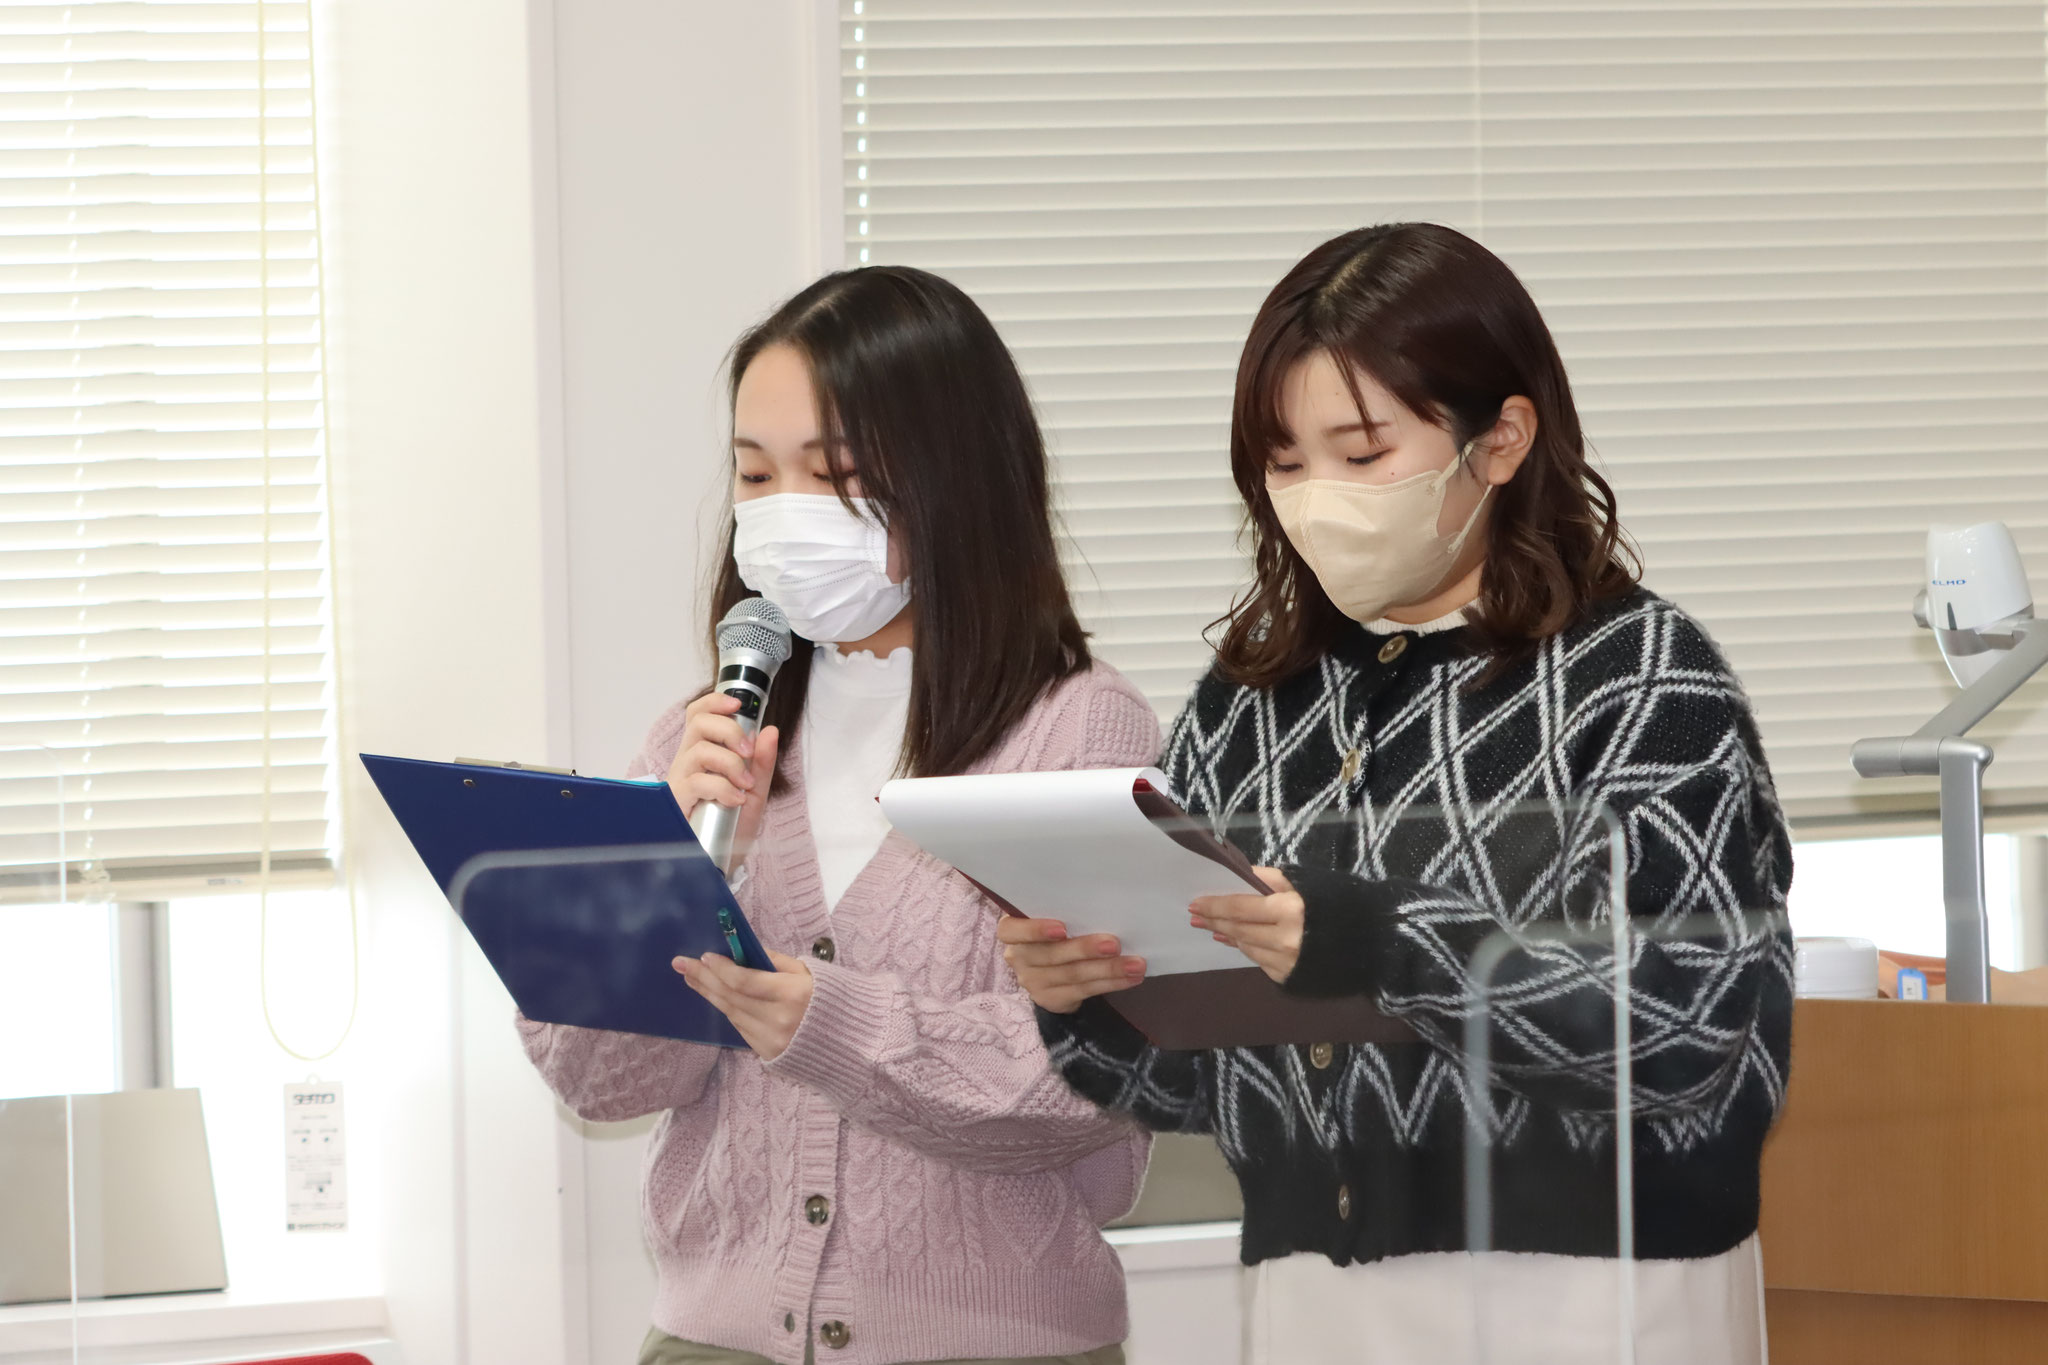 司会は東京キャンパス表現学科の学生が務めました。